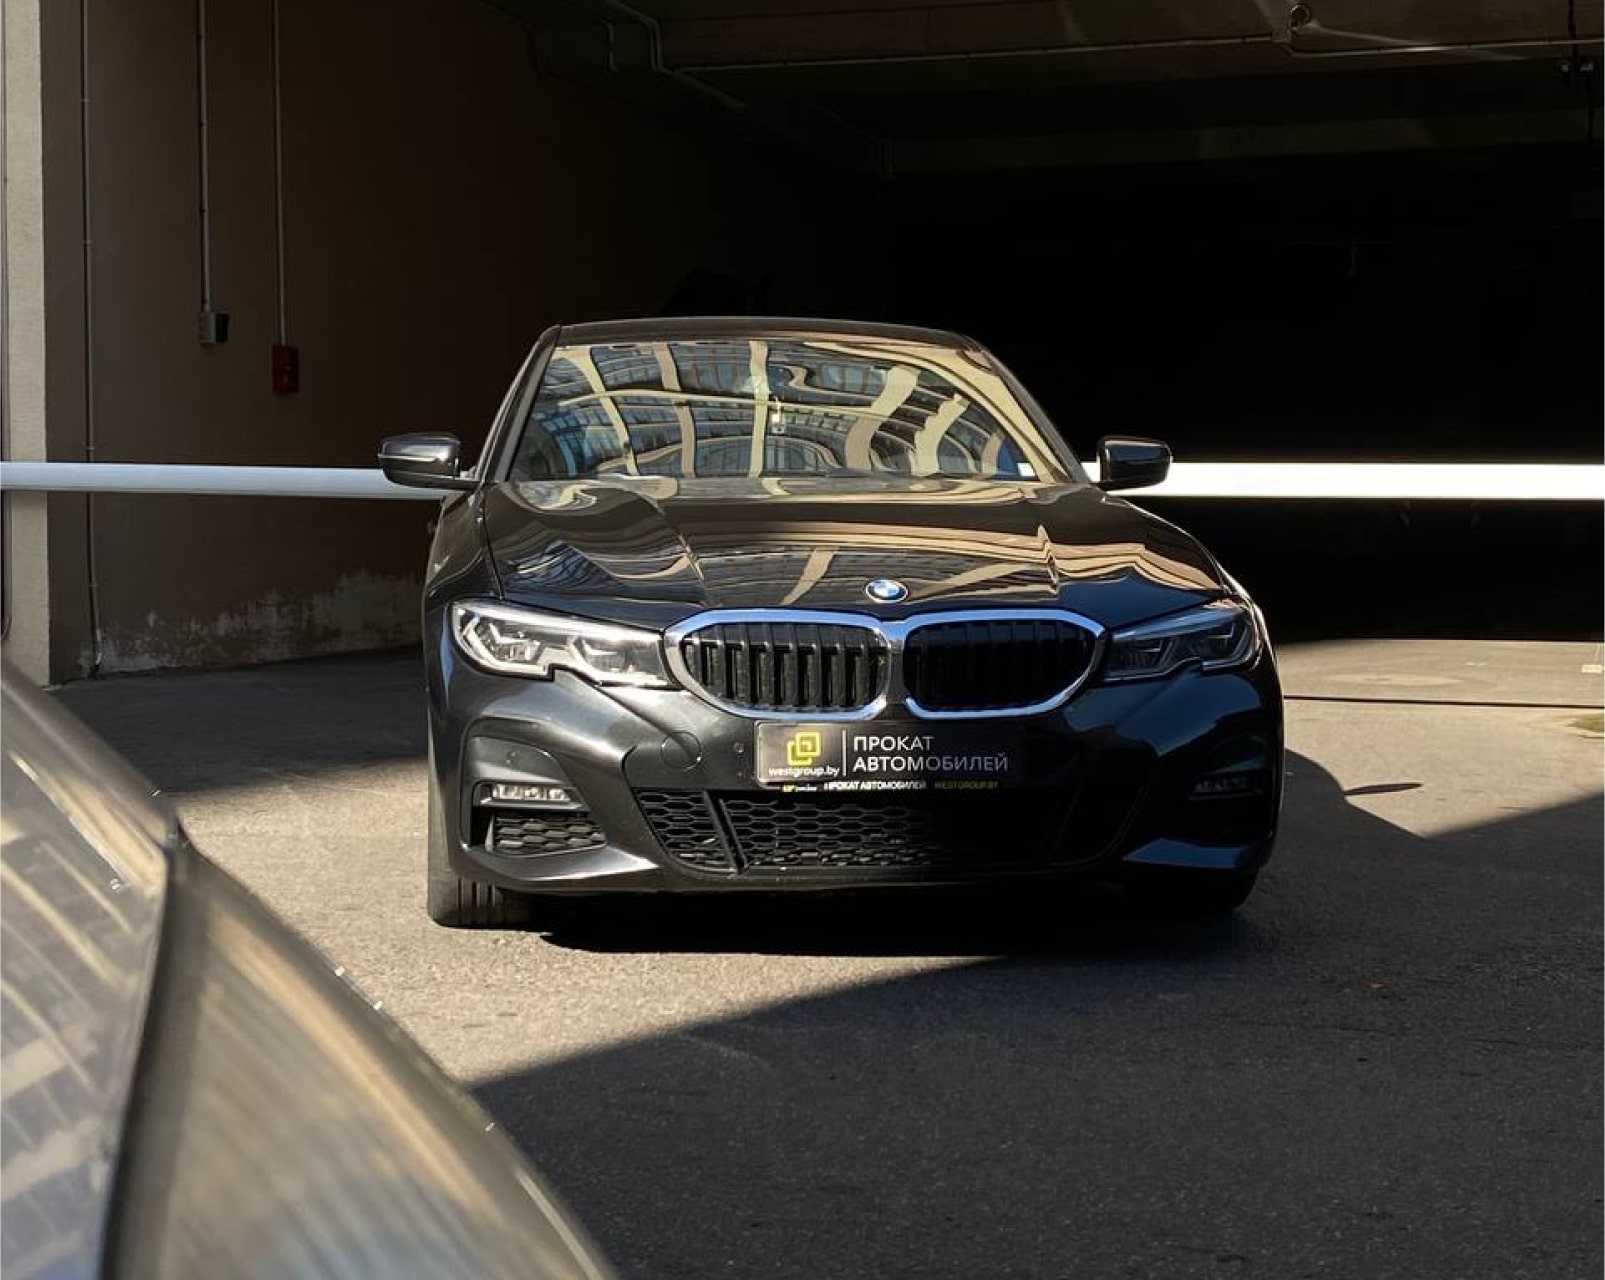 Аренда  BMW 320d G20 M-sport  3 класса 2019 года в городе Минск от 84 $/сутки,  двигатель: Бензин , объем 2.0 литров, КАСКО (Мультидрайв), без водителя, вид 4 - West Group